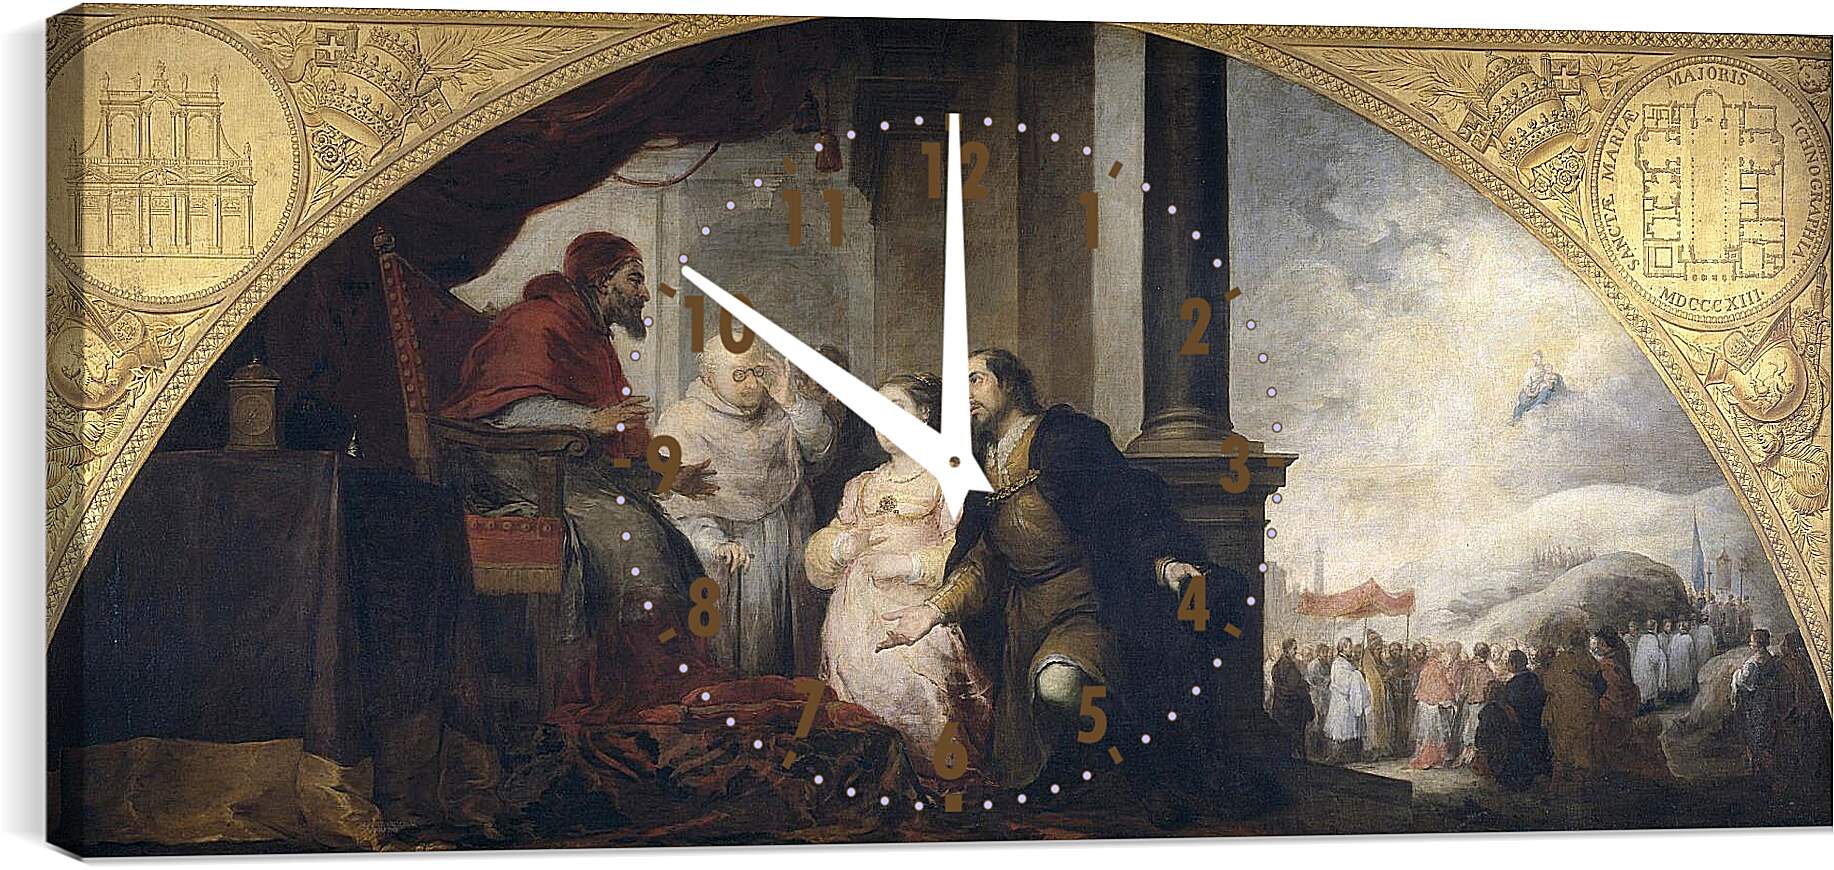 Часы картина - Аристократ Хуан и его жена рассказывают о своем сне Папе Либерию. Бартоломе Эстебан Мурильо